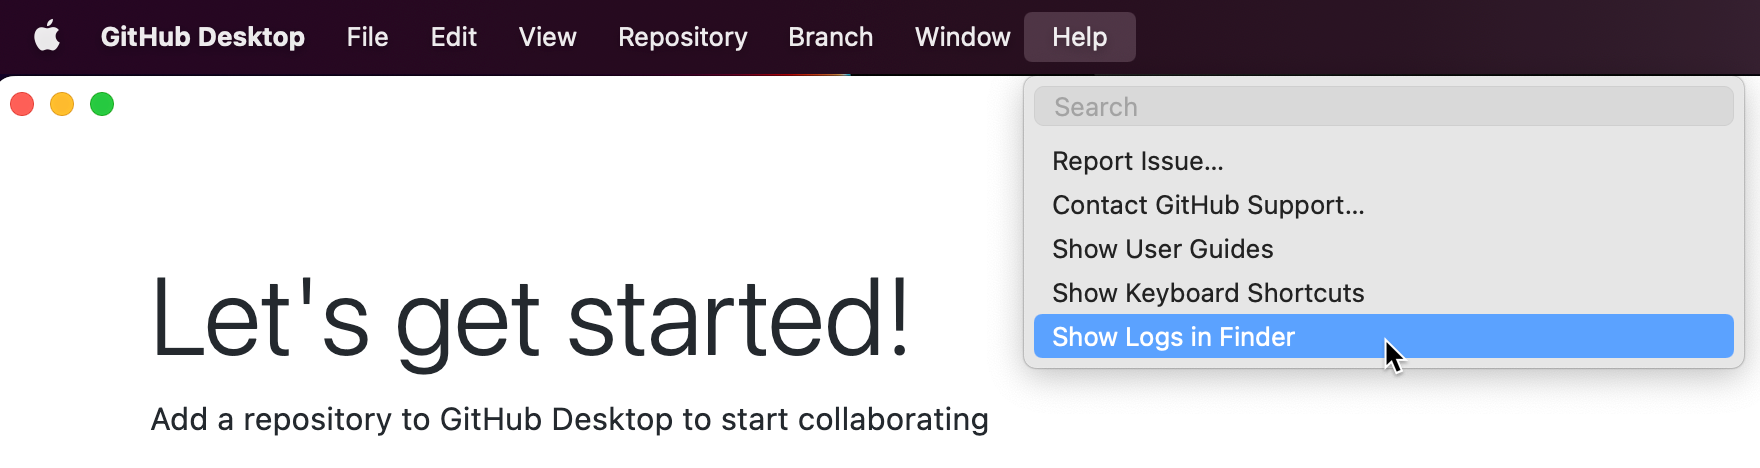 Снимок экрана: панель меню "GitHub Desktop" на Компьютере Mac. В раскрывающемся меню "Справка" курсор наведите указатель мыши на "Показать журналы в Finder", выделенный синим цветом.